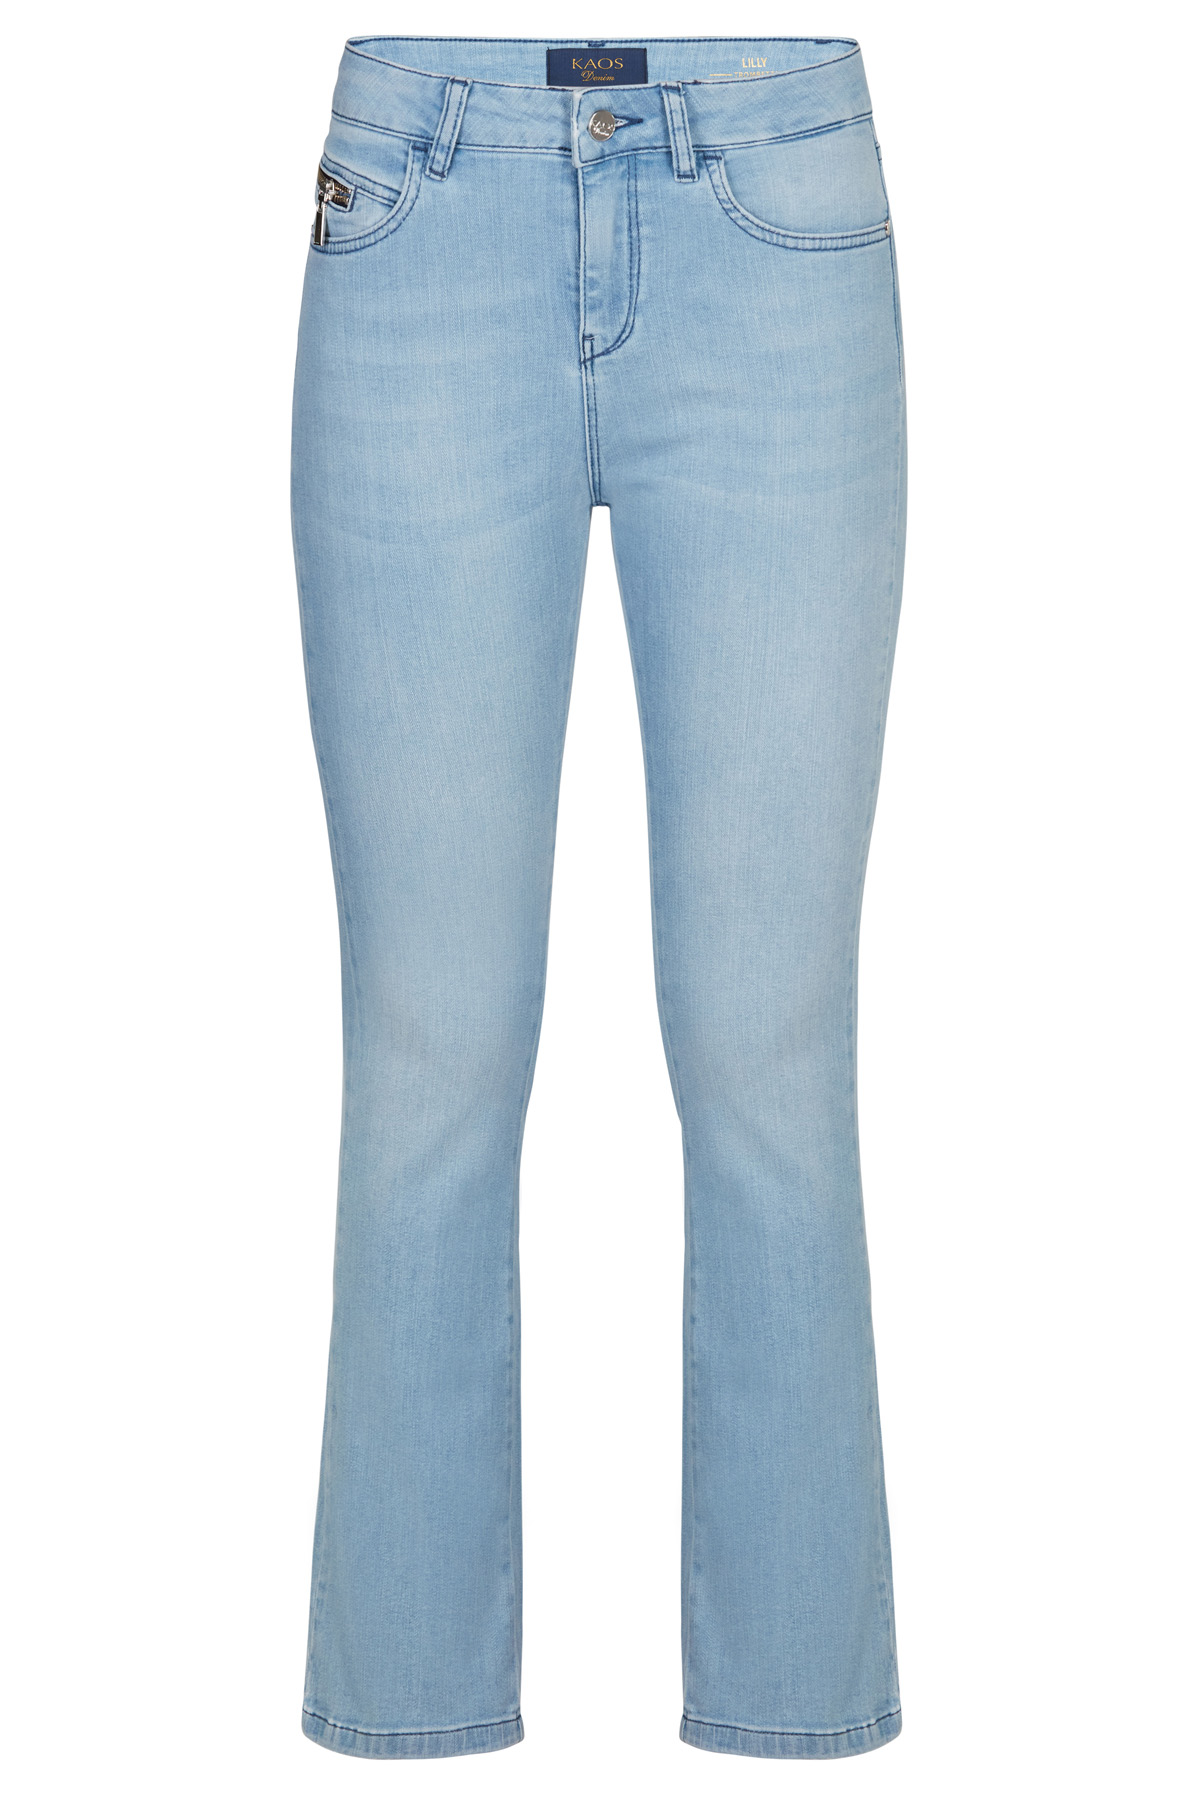 Simona - Cuffed Straight-Leg Jeans - Kaos Store